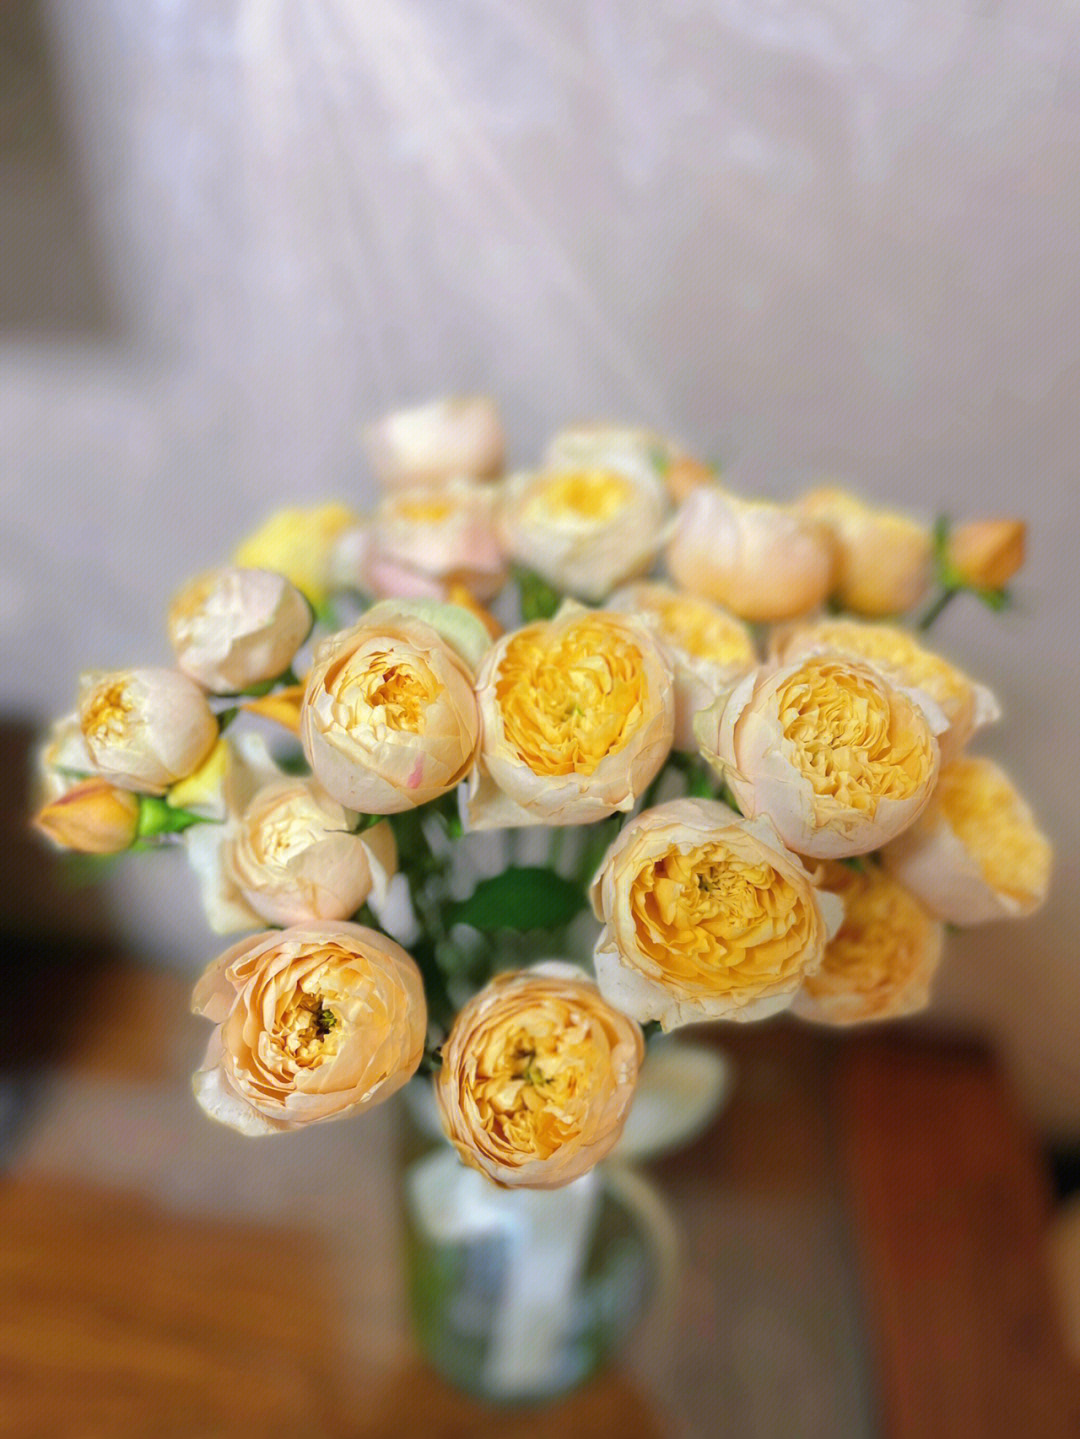 多头黄蝴蝶玫瑰花语图片